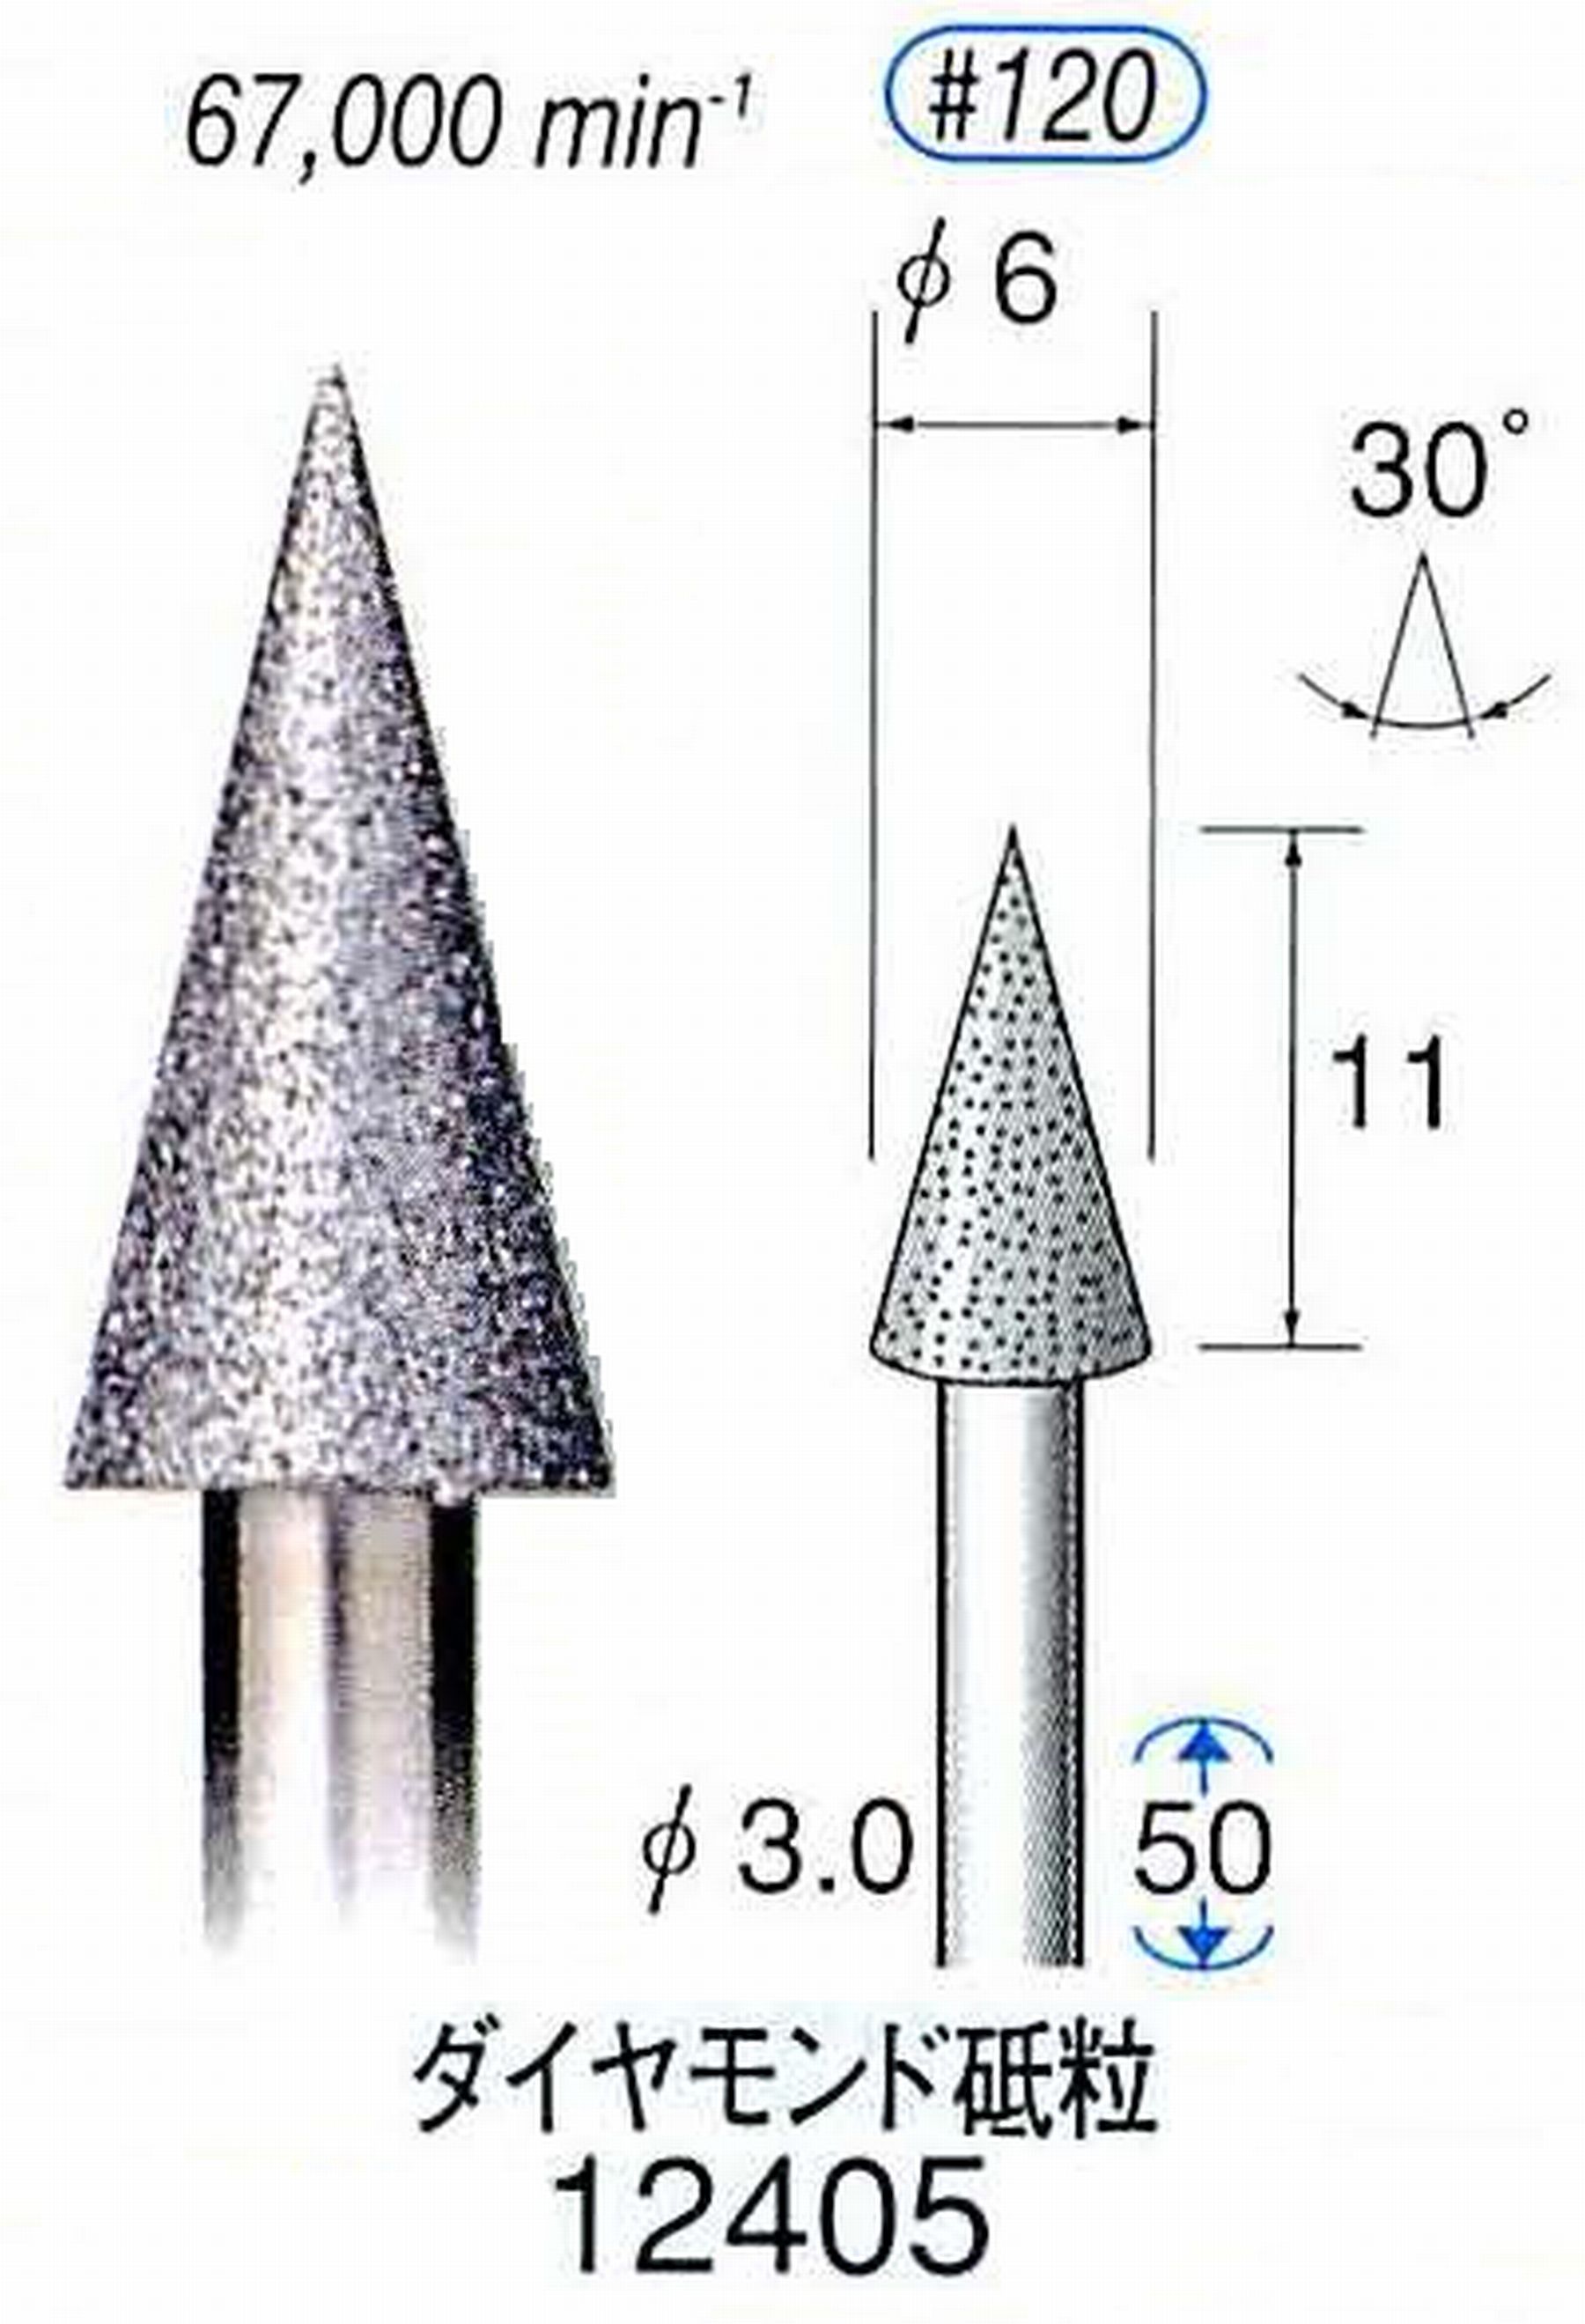 ナカニシ/NAKANISHI 電着ダイヤモンド ダイヤモンド砥粒 軸径(シャンク)φ3.0mm 12405